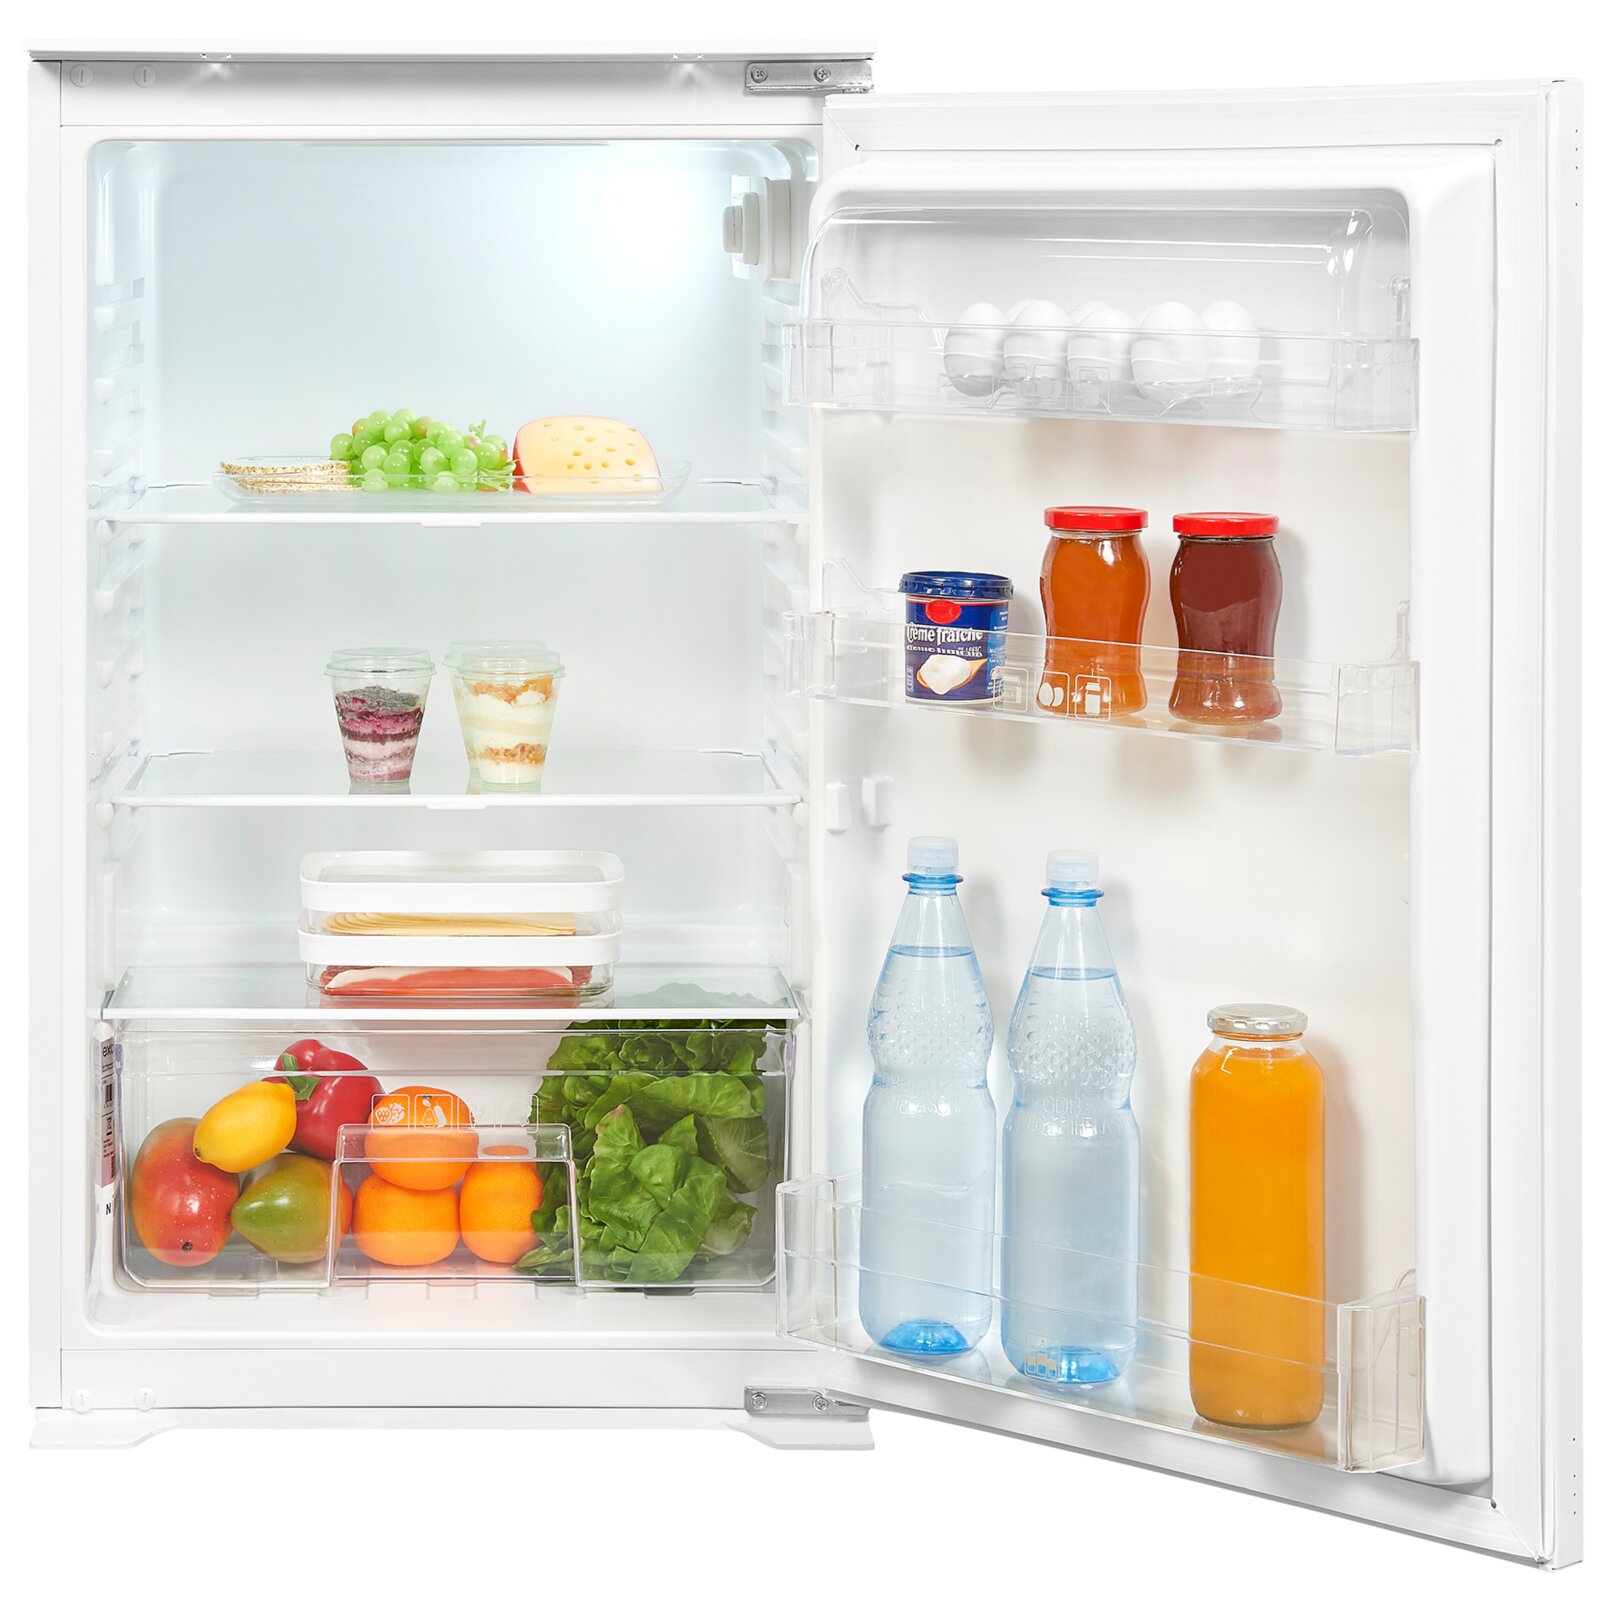 EXQUISIT Einbau-Kühlschrank kaufen F ROLLER bei | Online - EKS 130-V-040